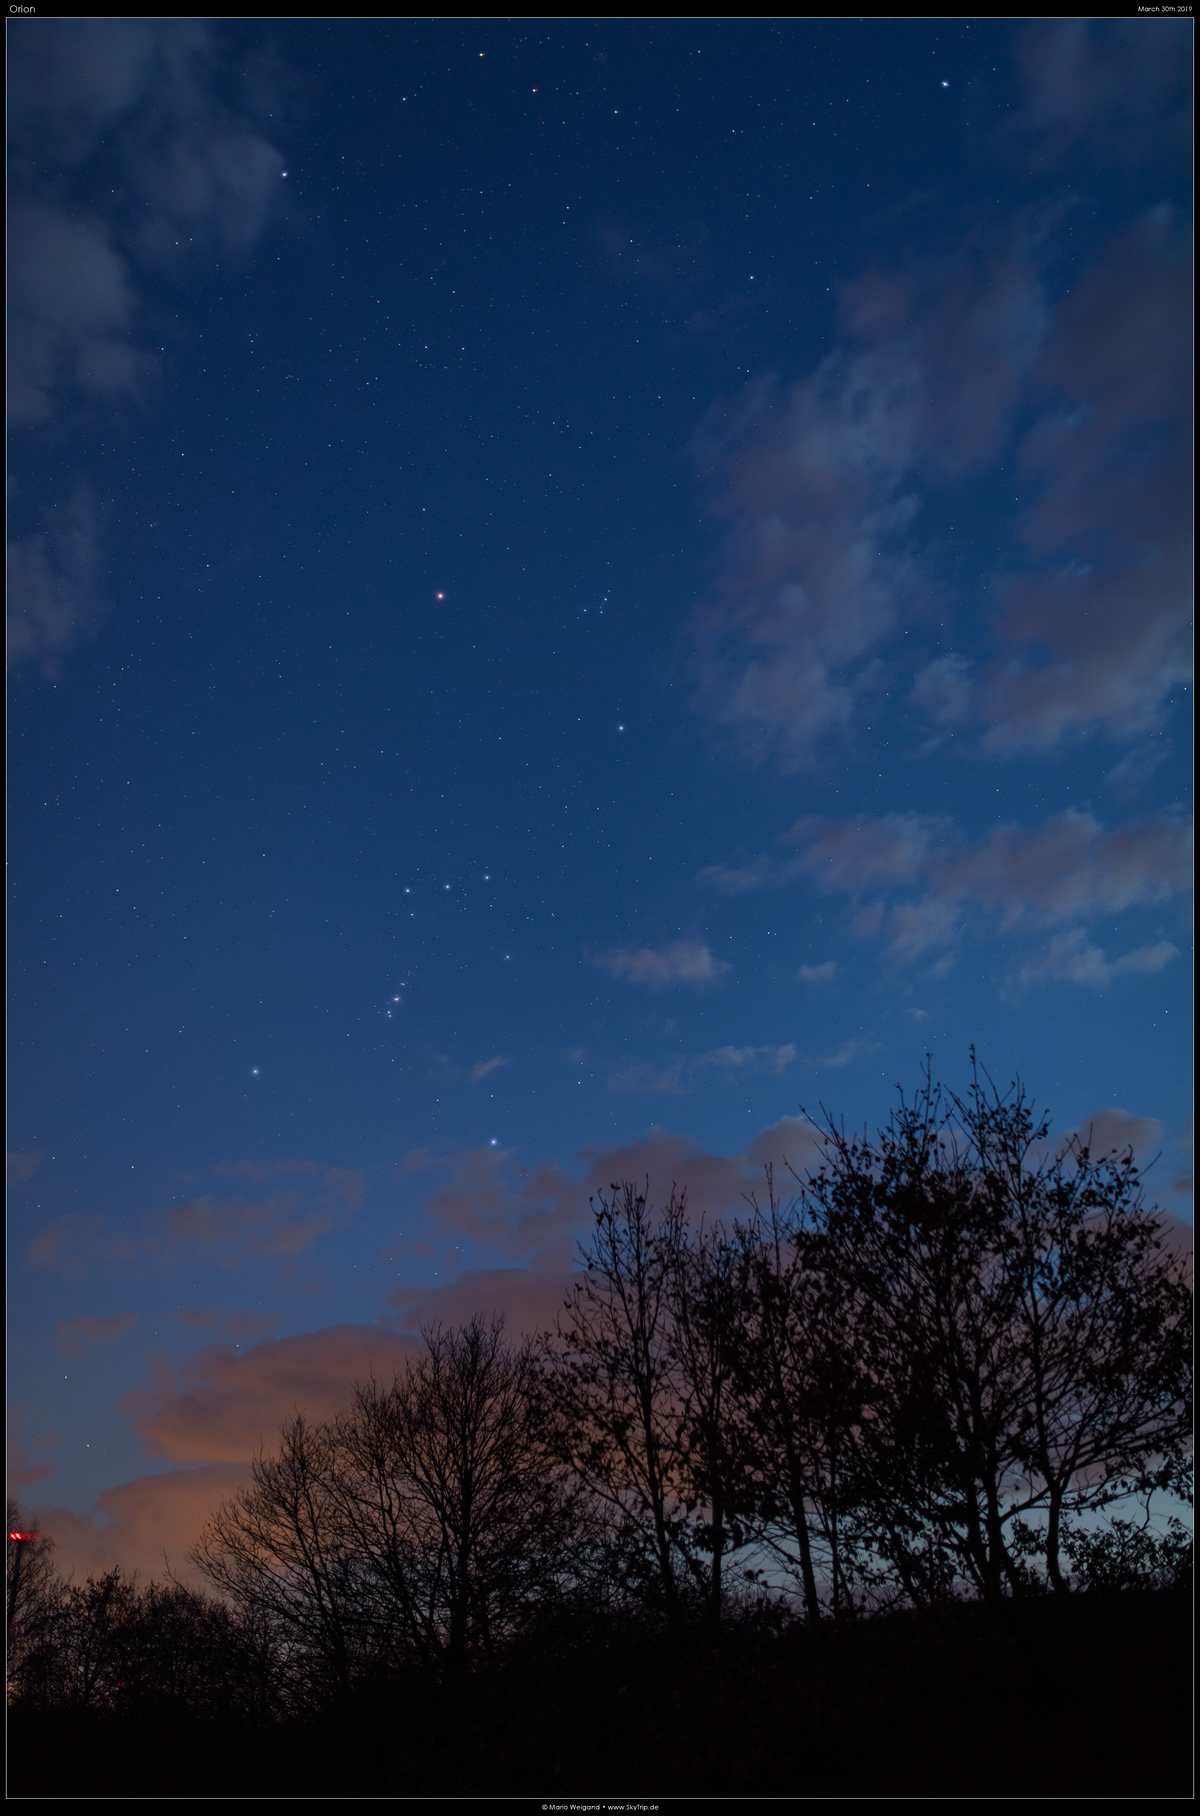 Sternbild Orion am Frhlingshimmel